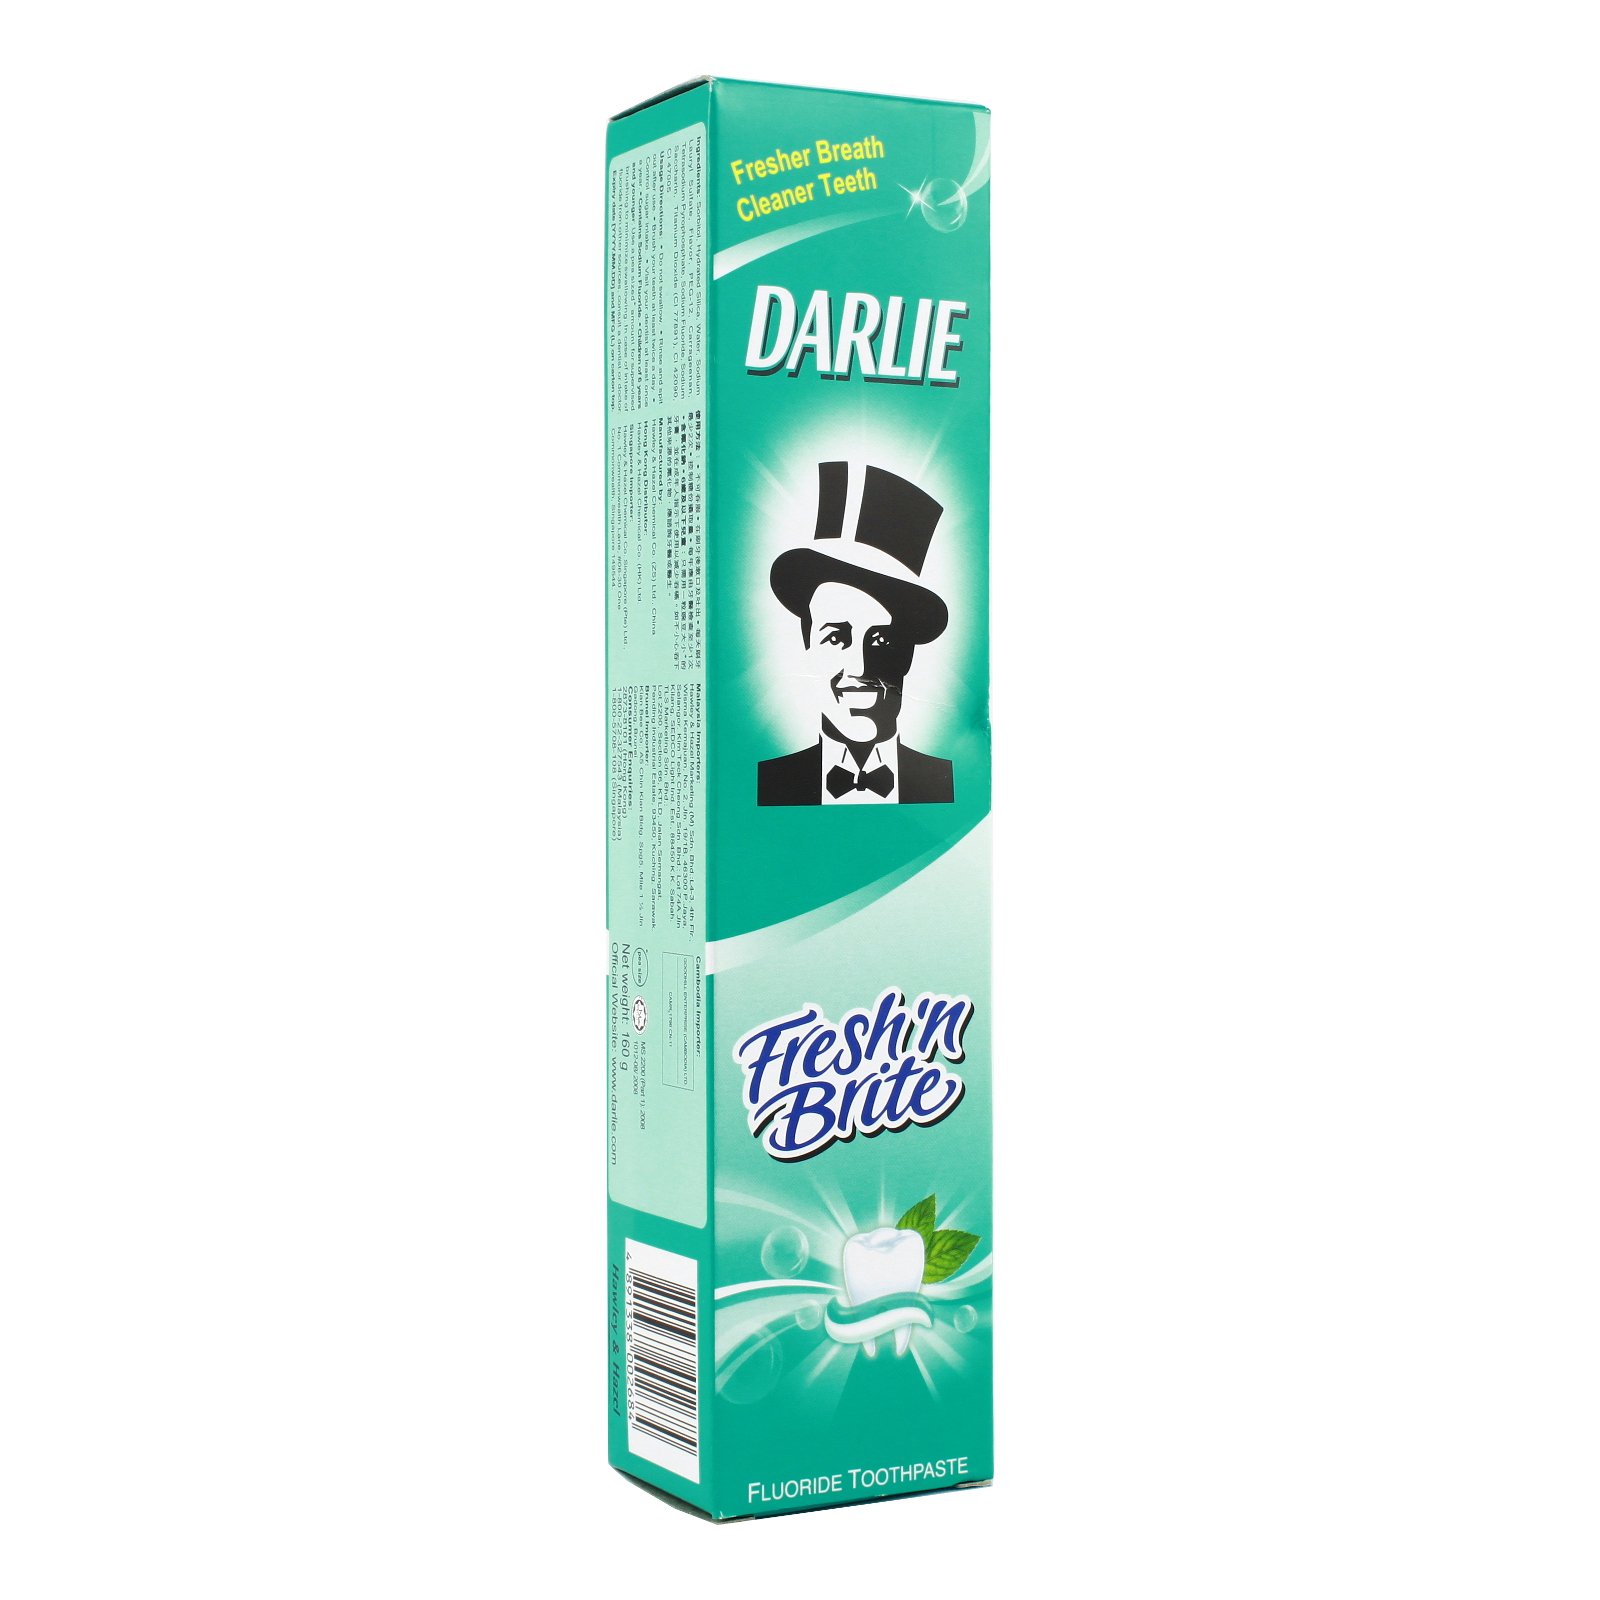 Darlie - Fresh N Brite Toothpaste 2 x 200g